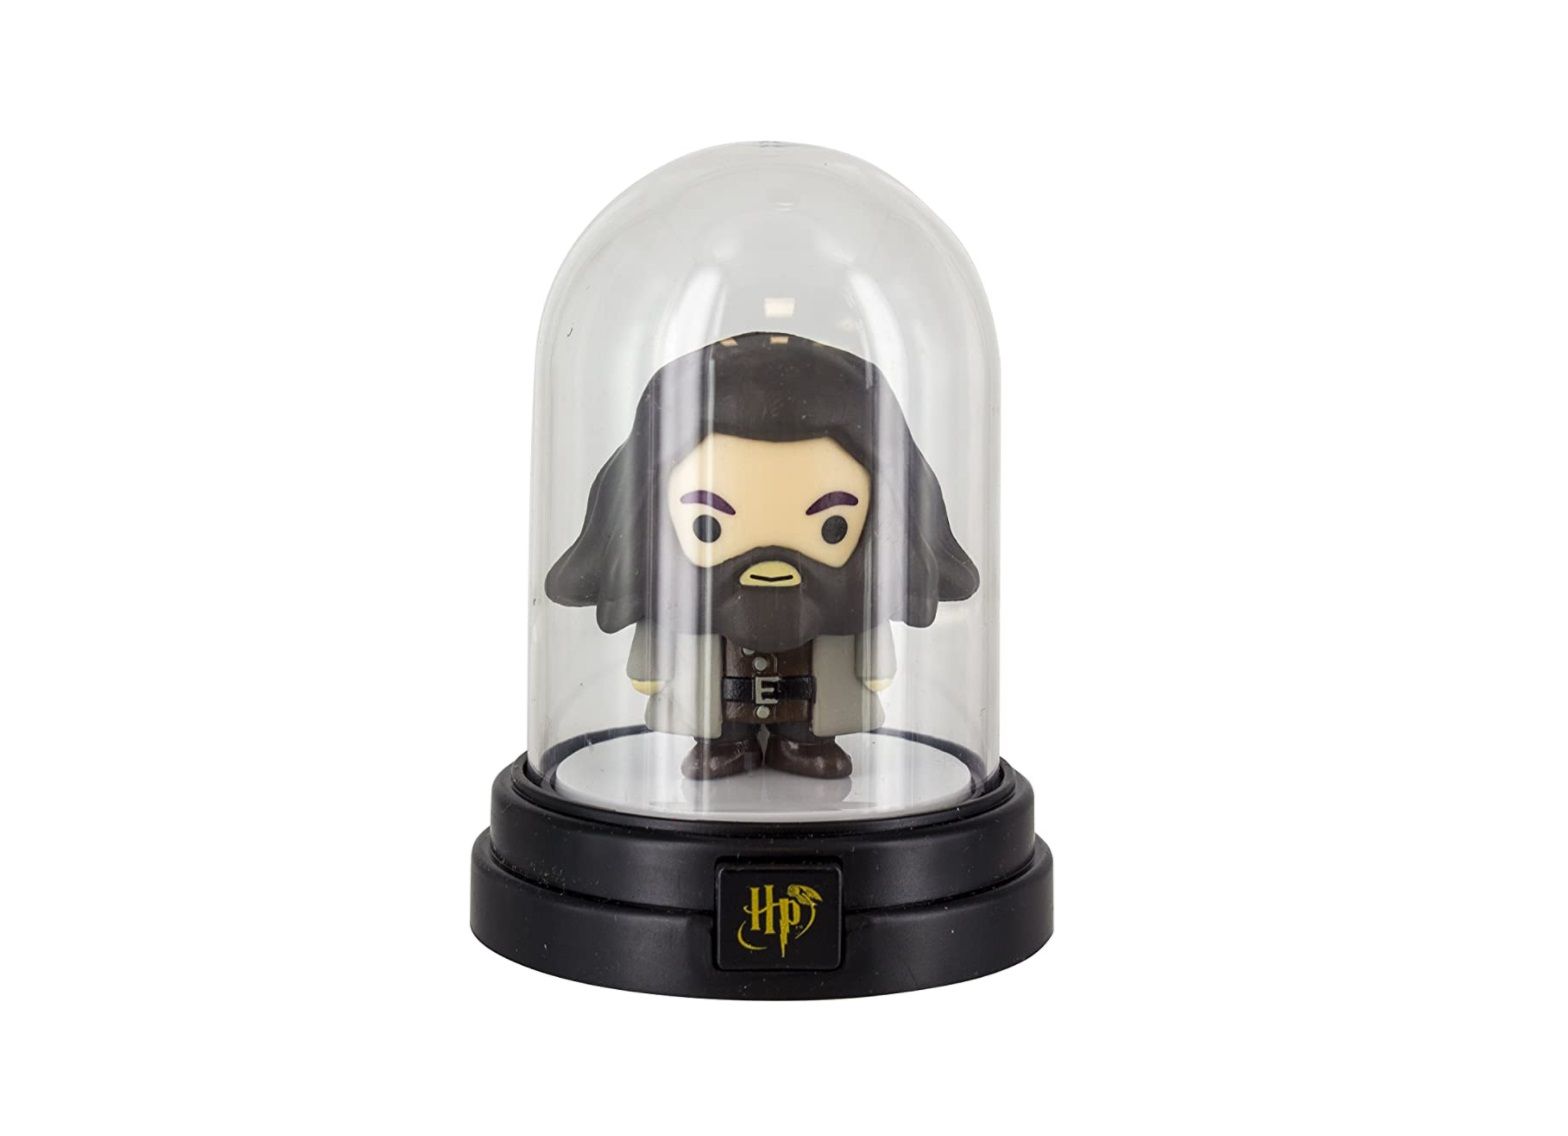 ¡67% de dto! Lámpara Harry Potter Bell Jar por sólo 5€ (antes 14,99€)